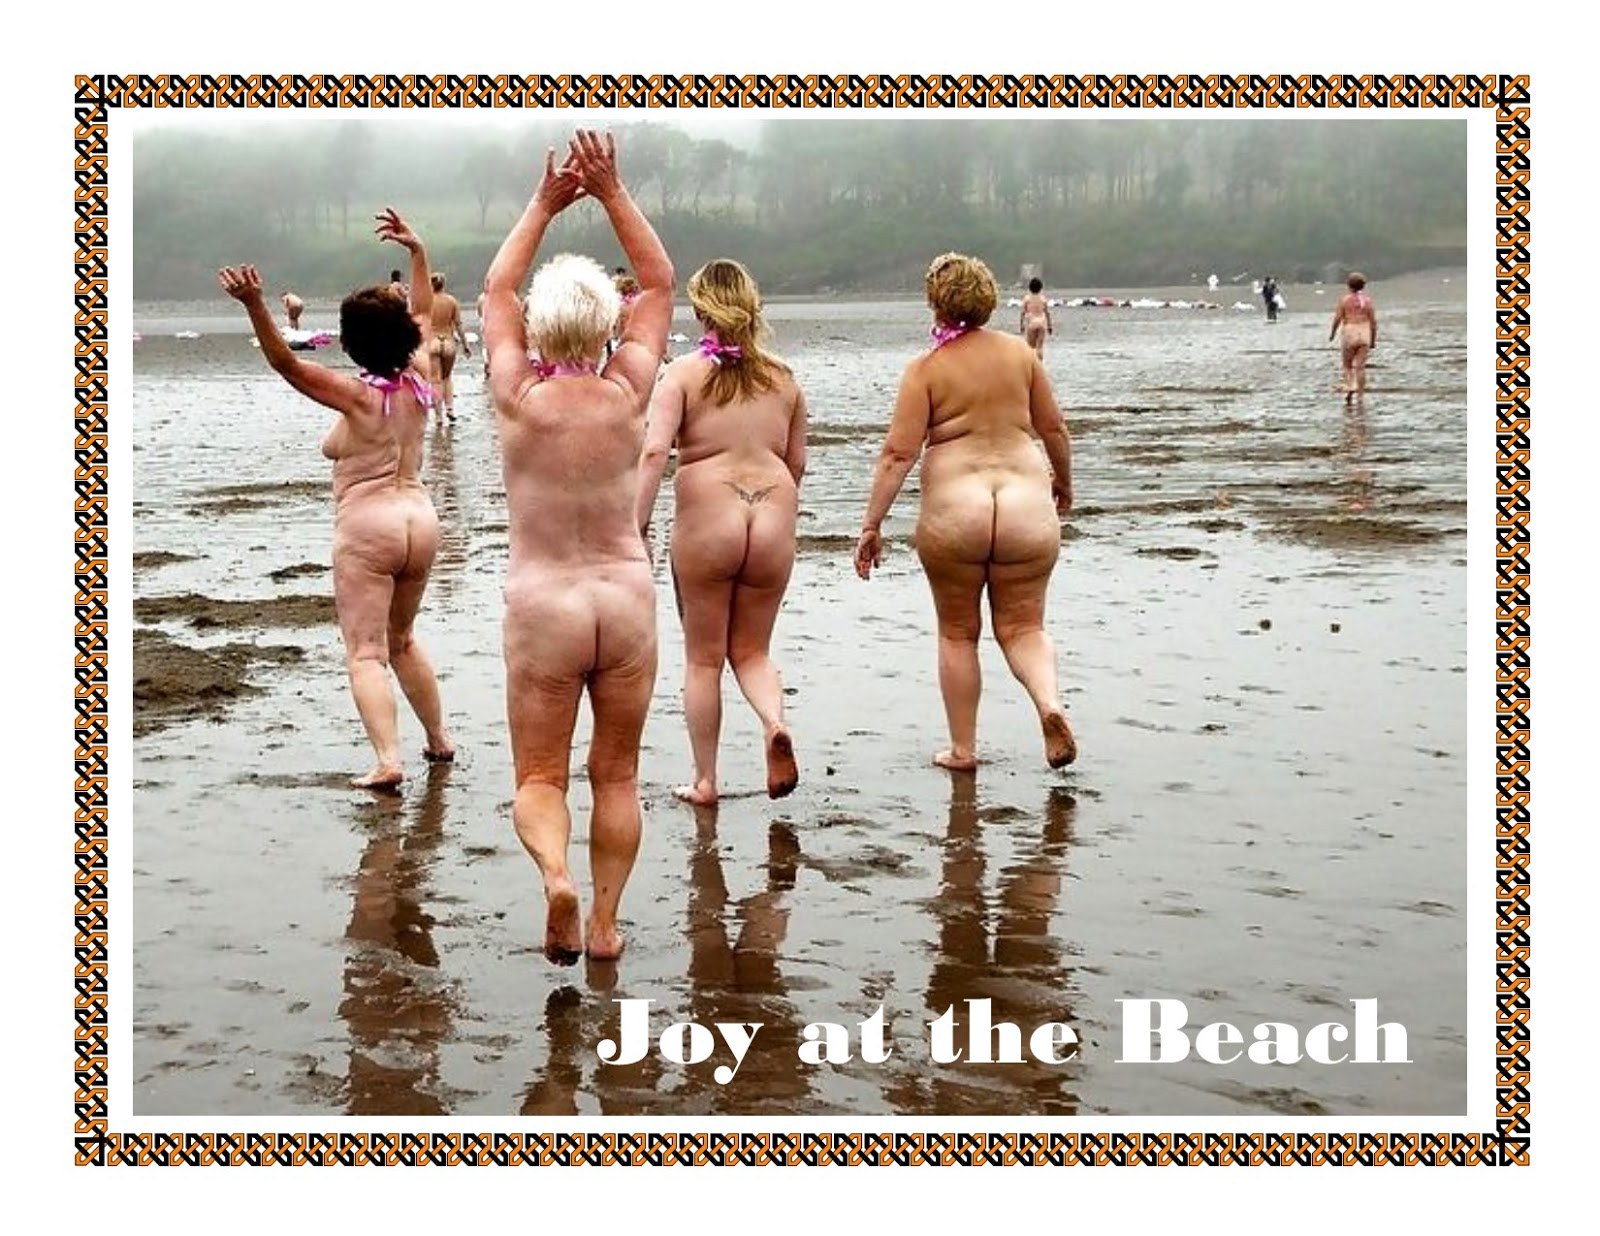 нудисты купаются голыми на пляжи фото 28